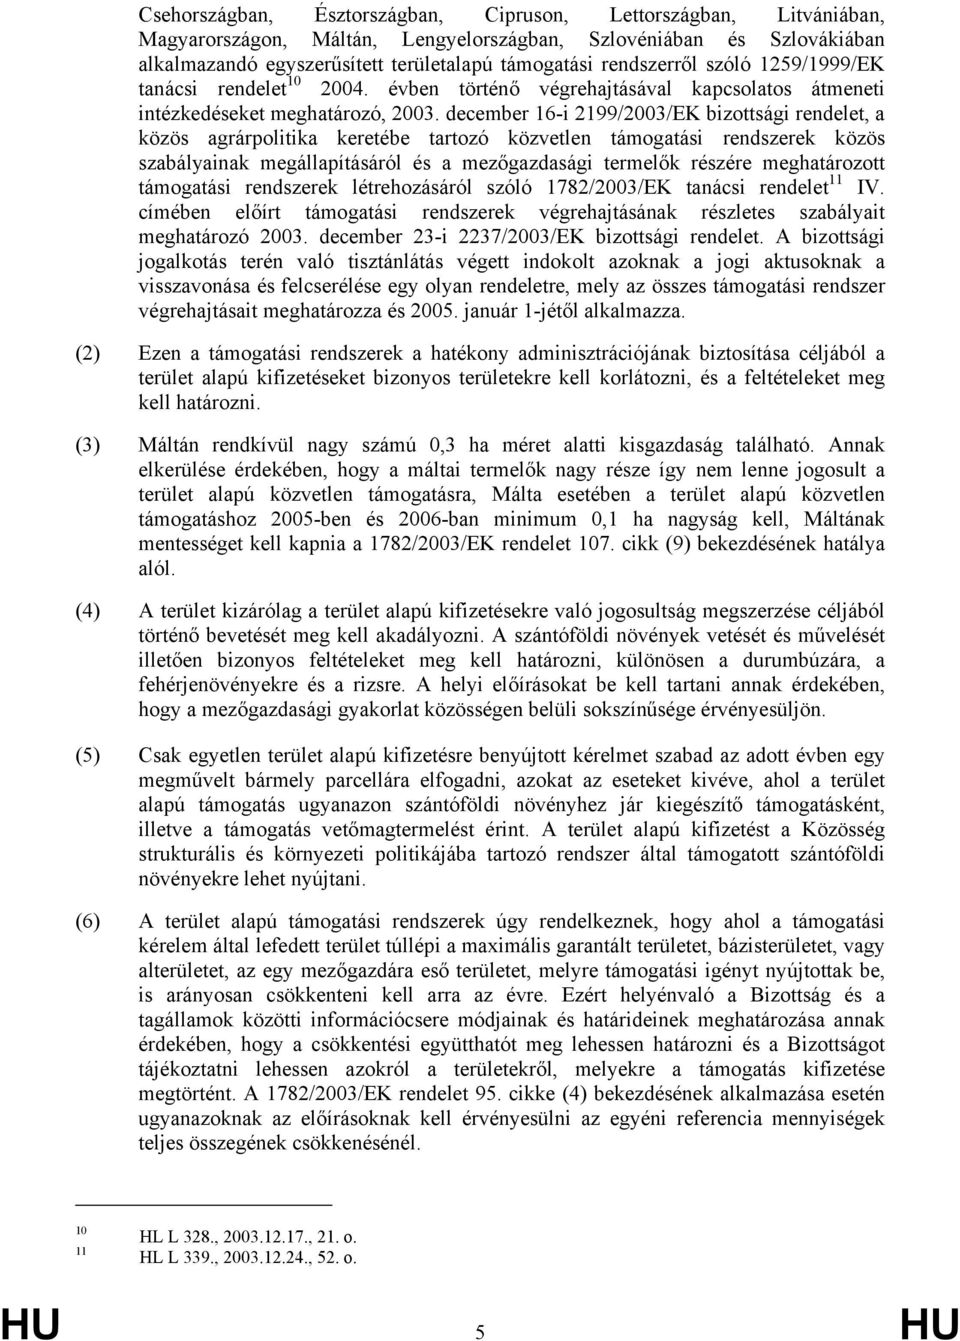 december 16-i 2199/2003/EK bizottsági rendelet, a közös agrárpolitika keretébe tartozó közvetlen támogatási rendszerek közös szabályainak megállapításáról és a mezőgazdasági termelők részére